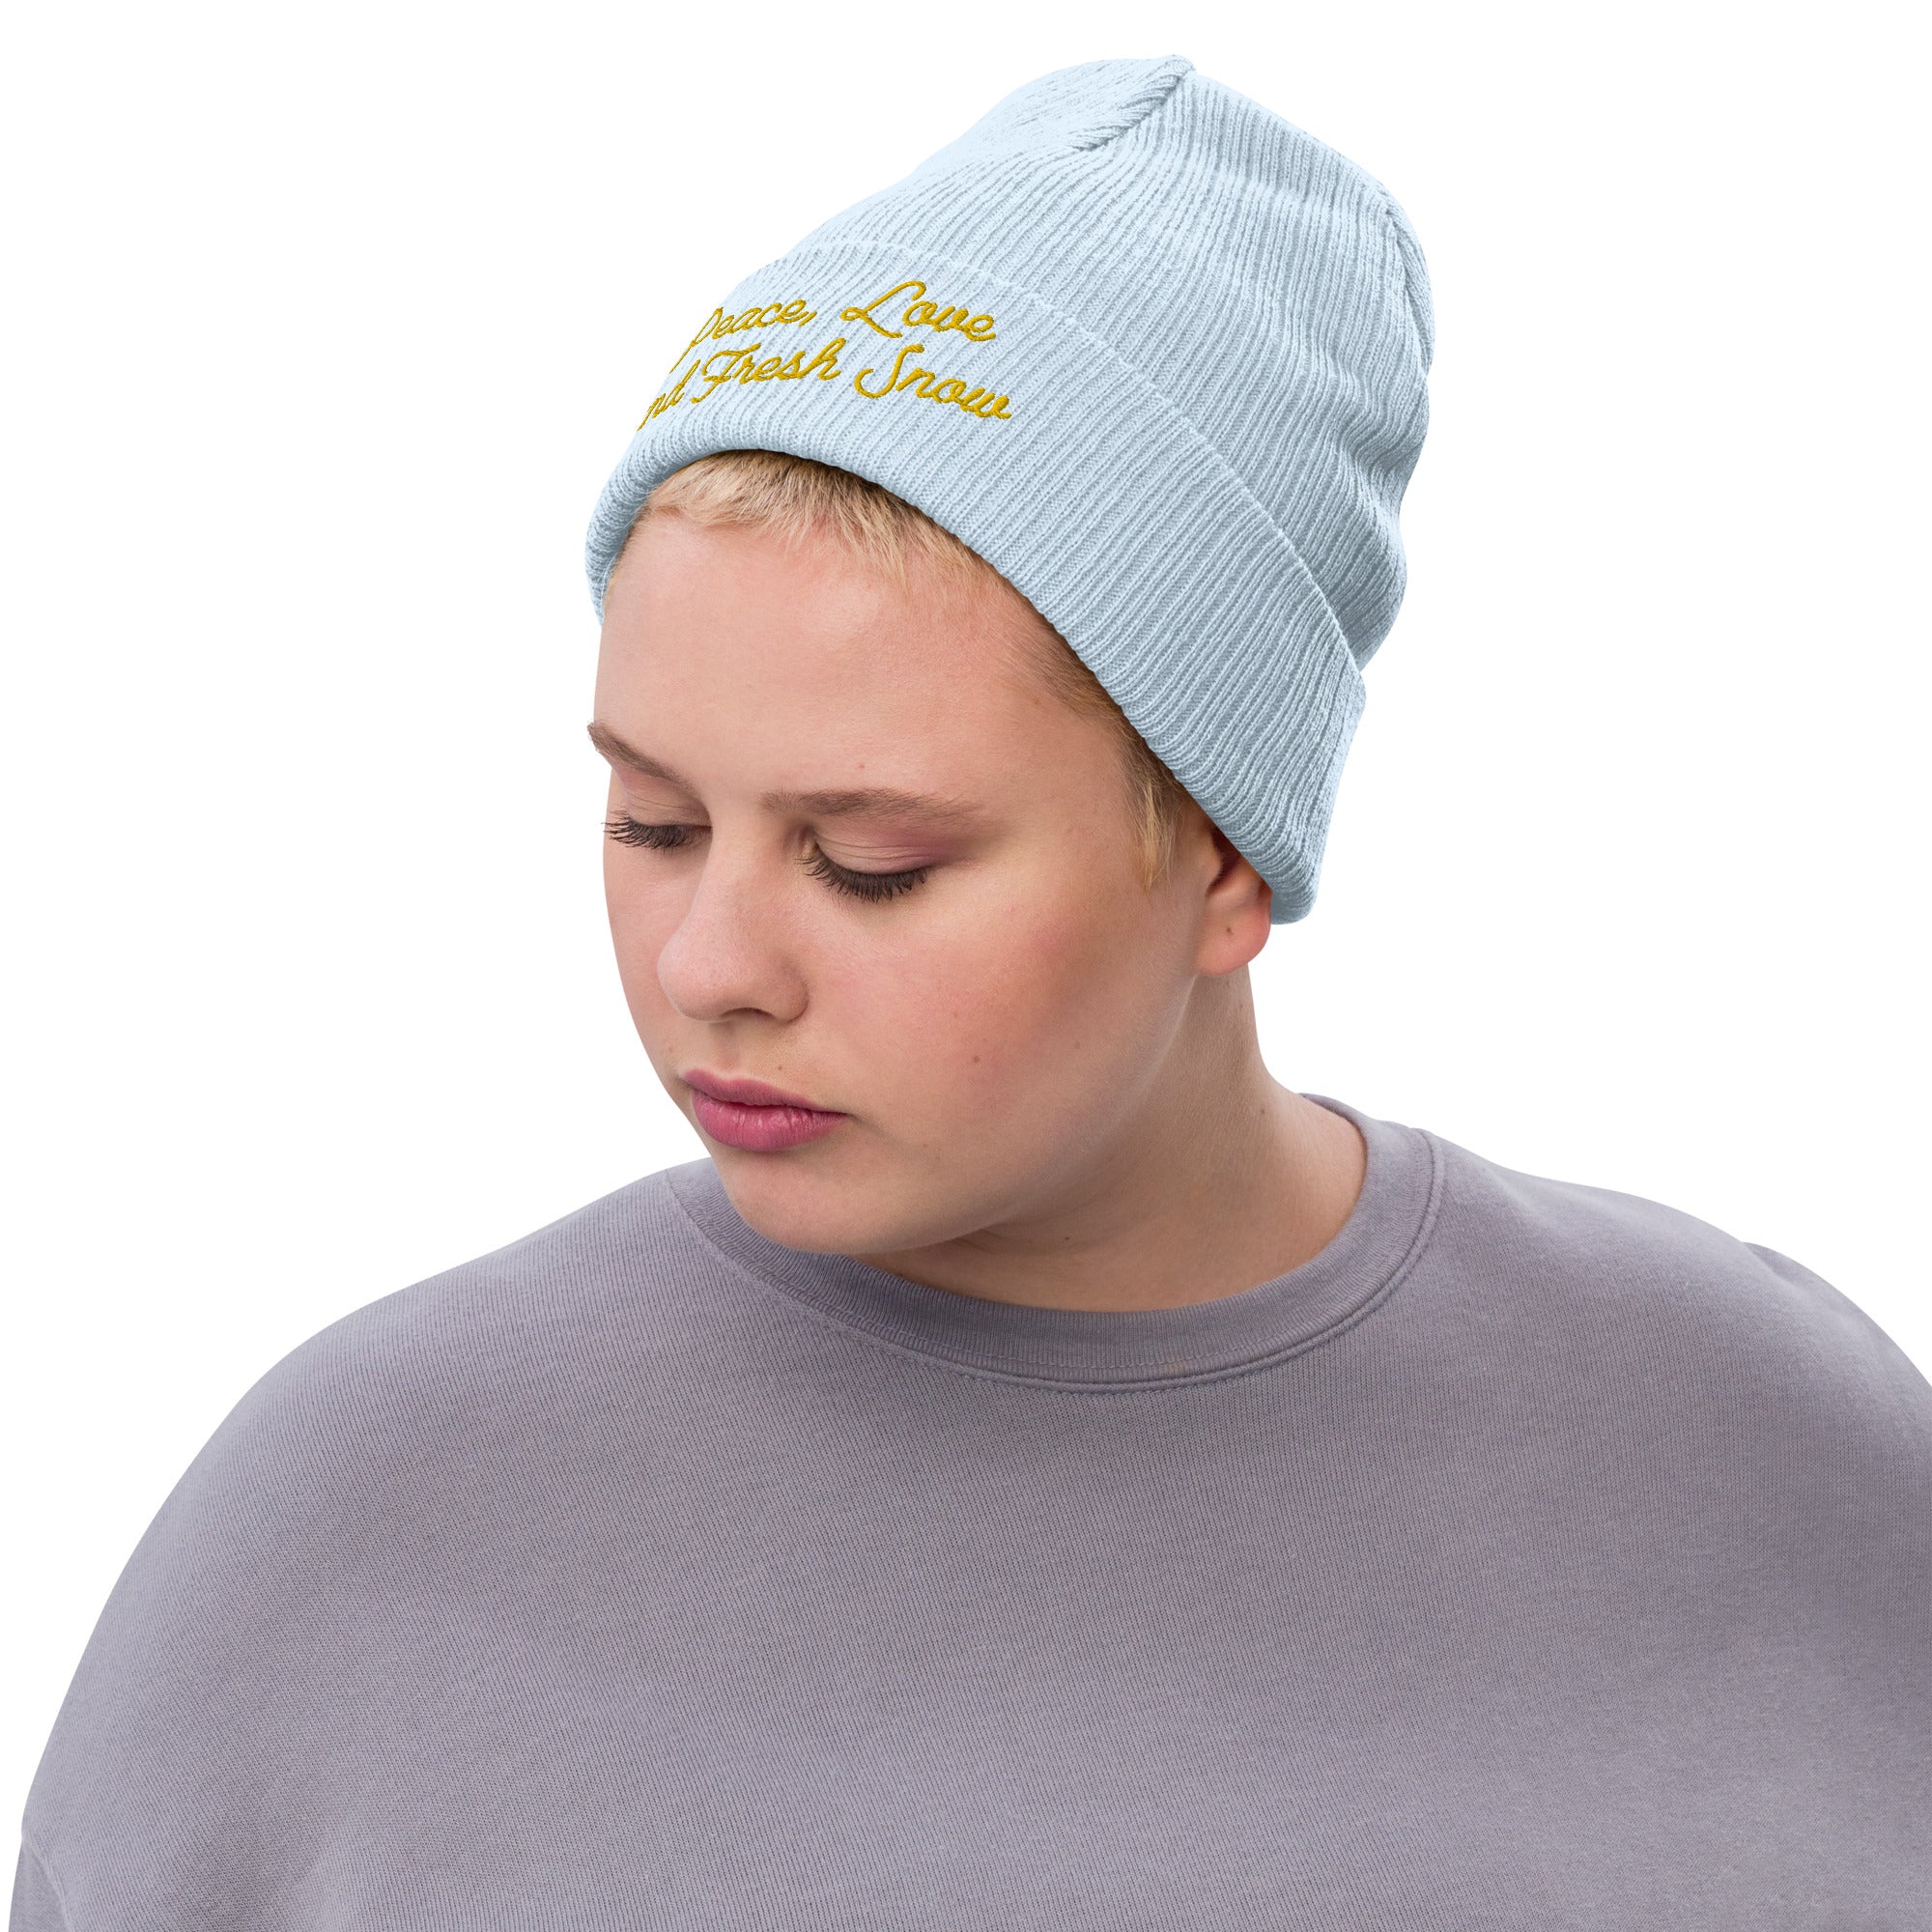 Bonnet éco-responsable en tricot côtelé Peace, Love and Fresh Snow Gold